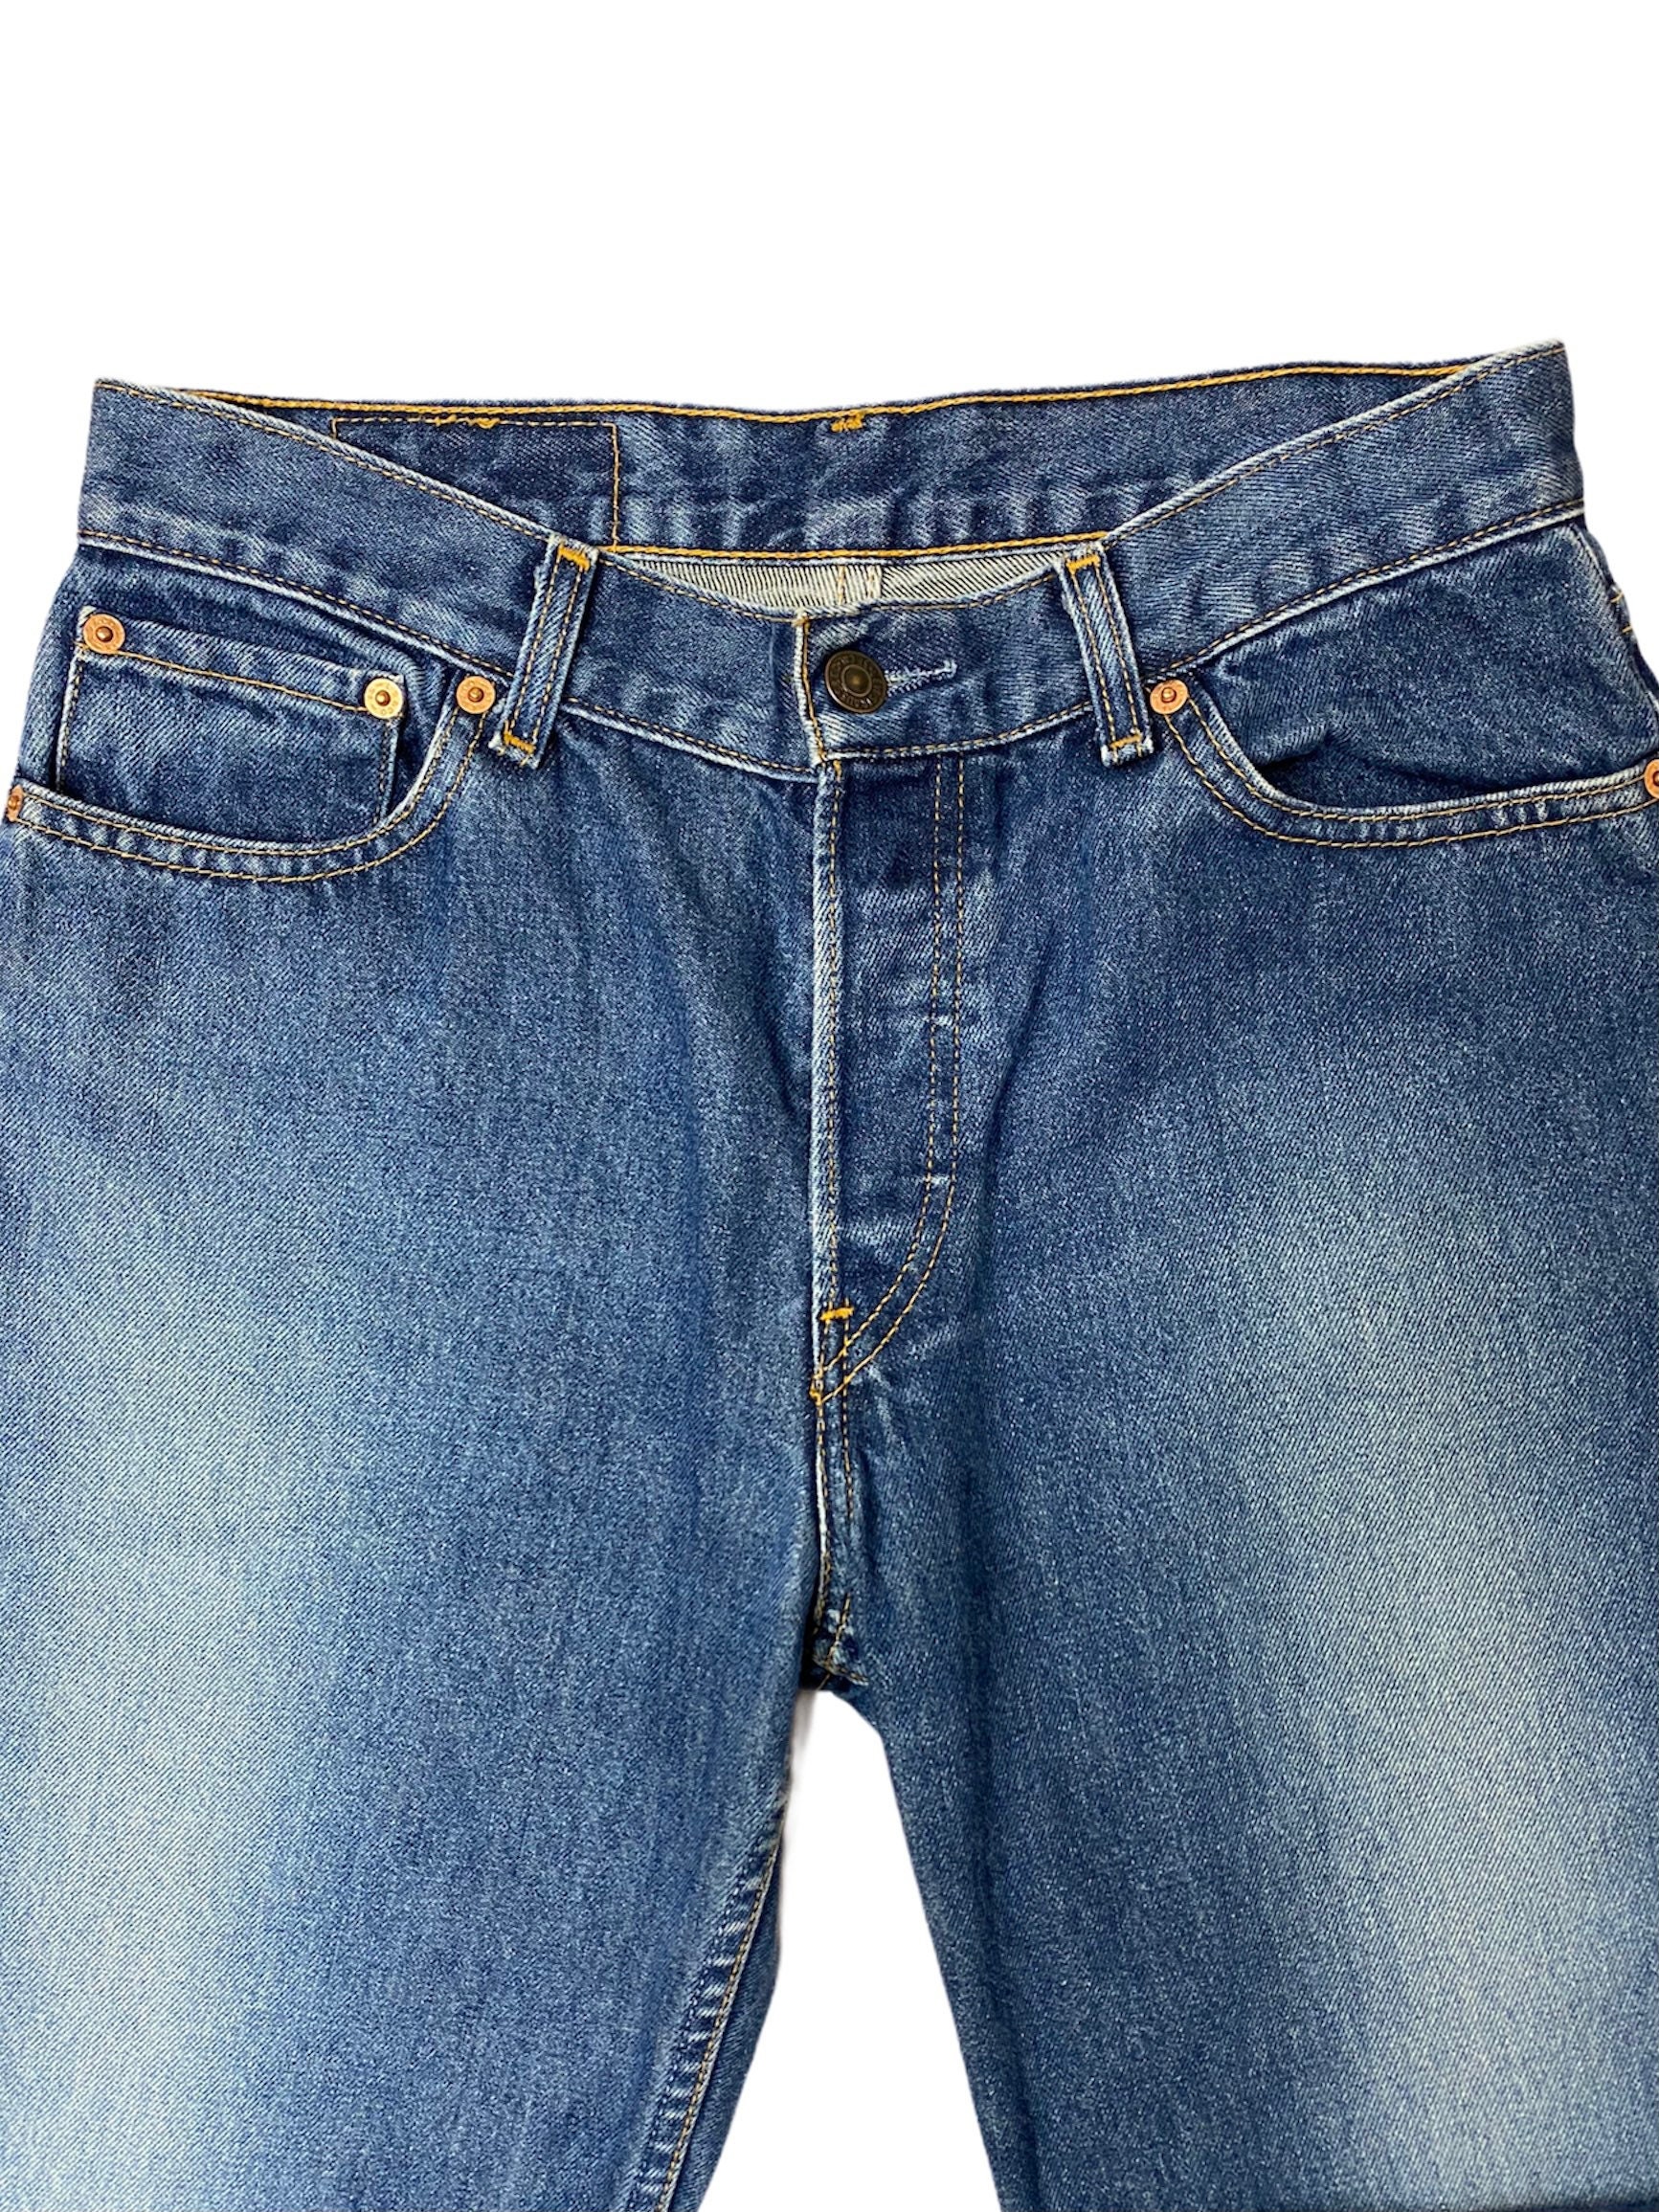 30x33 Vintage LEVIS 575 Denim Jeans Medium-dark Wash Straight | Etsy